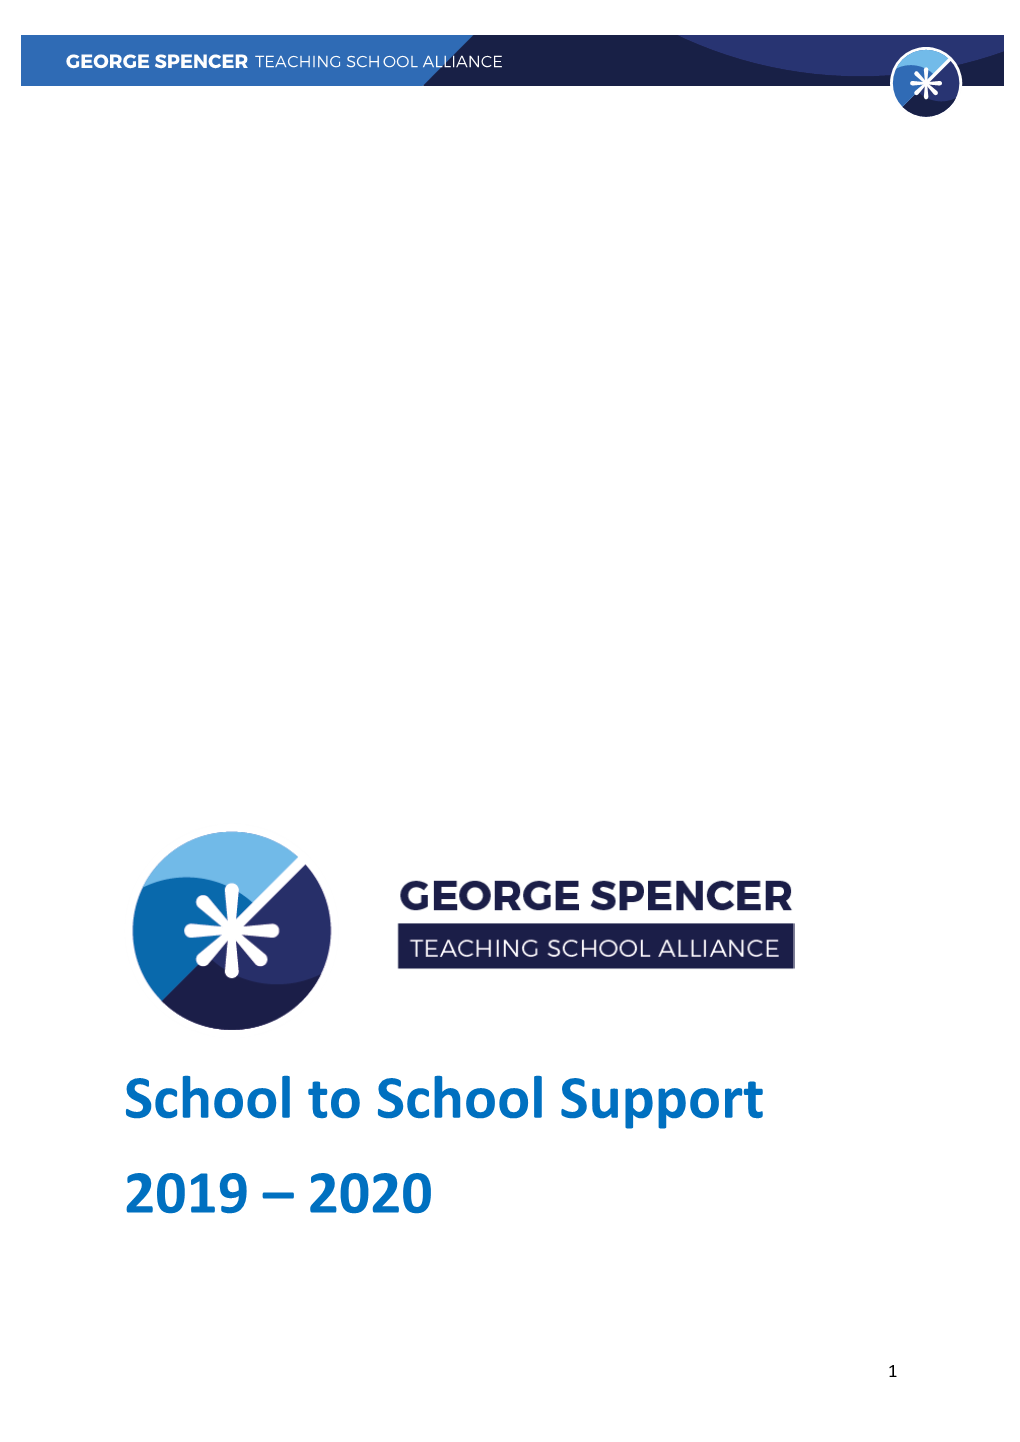 School to School Support 2019 – 2020